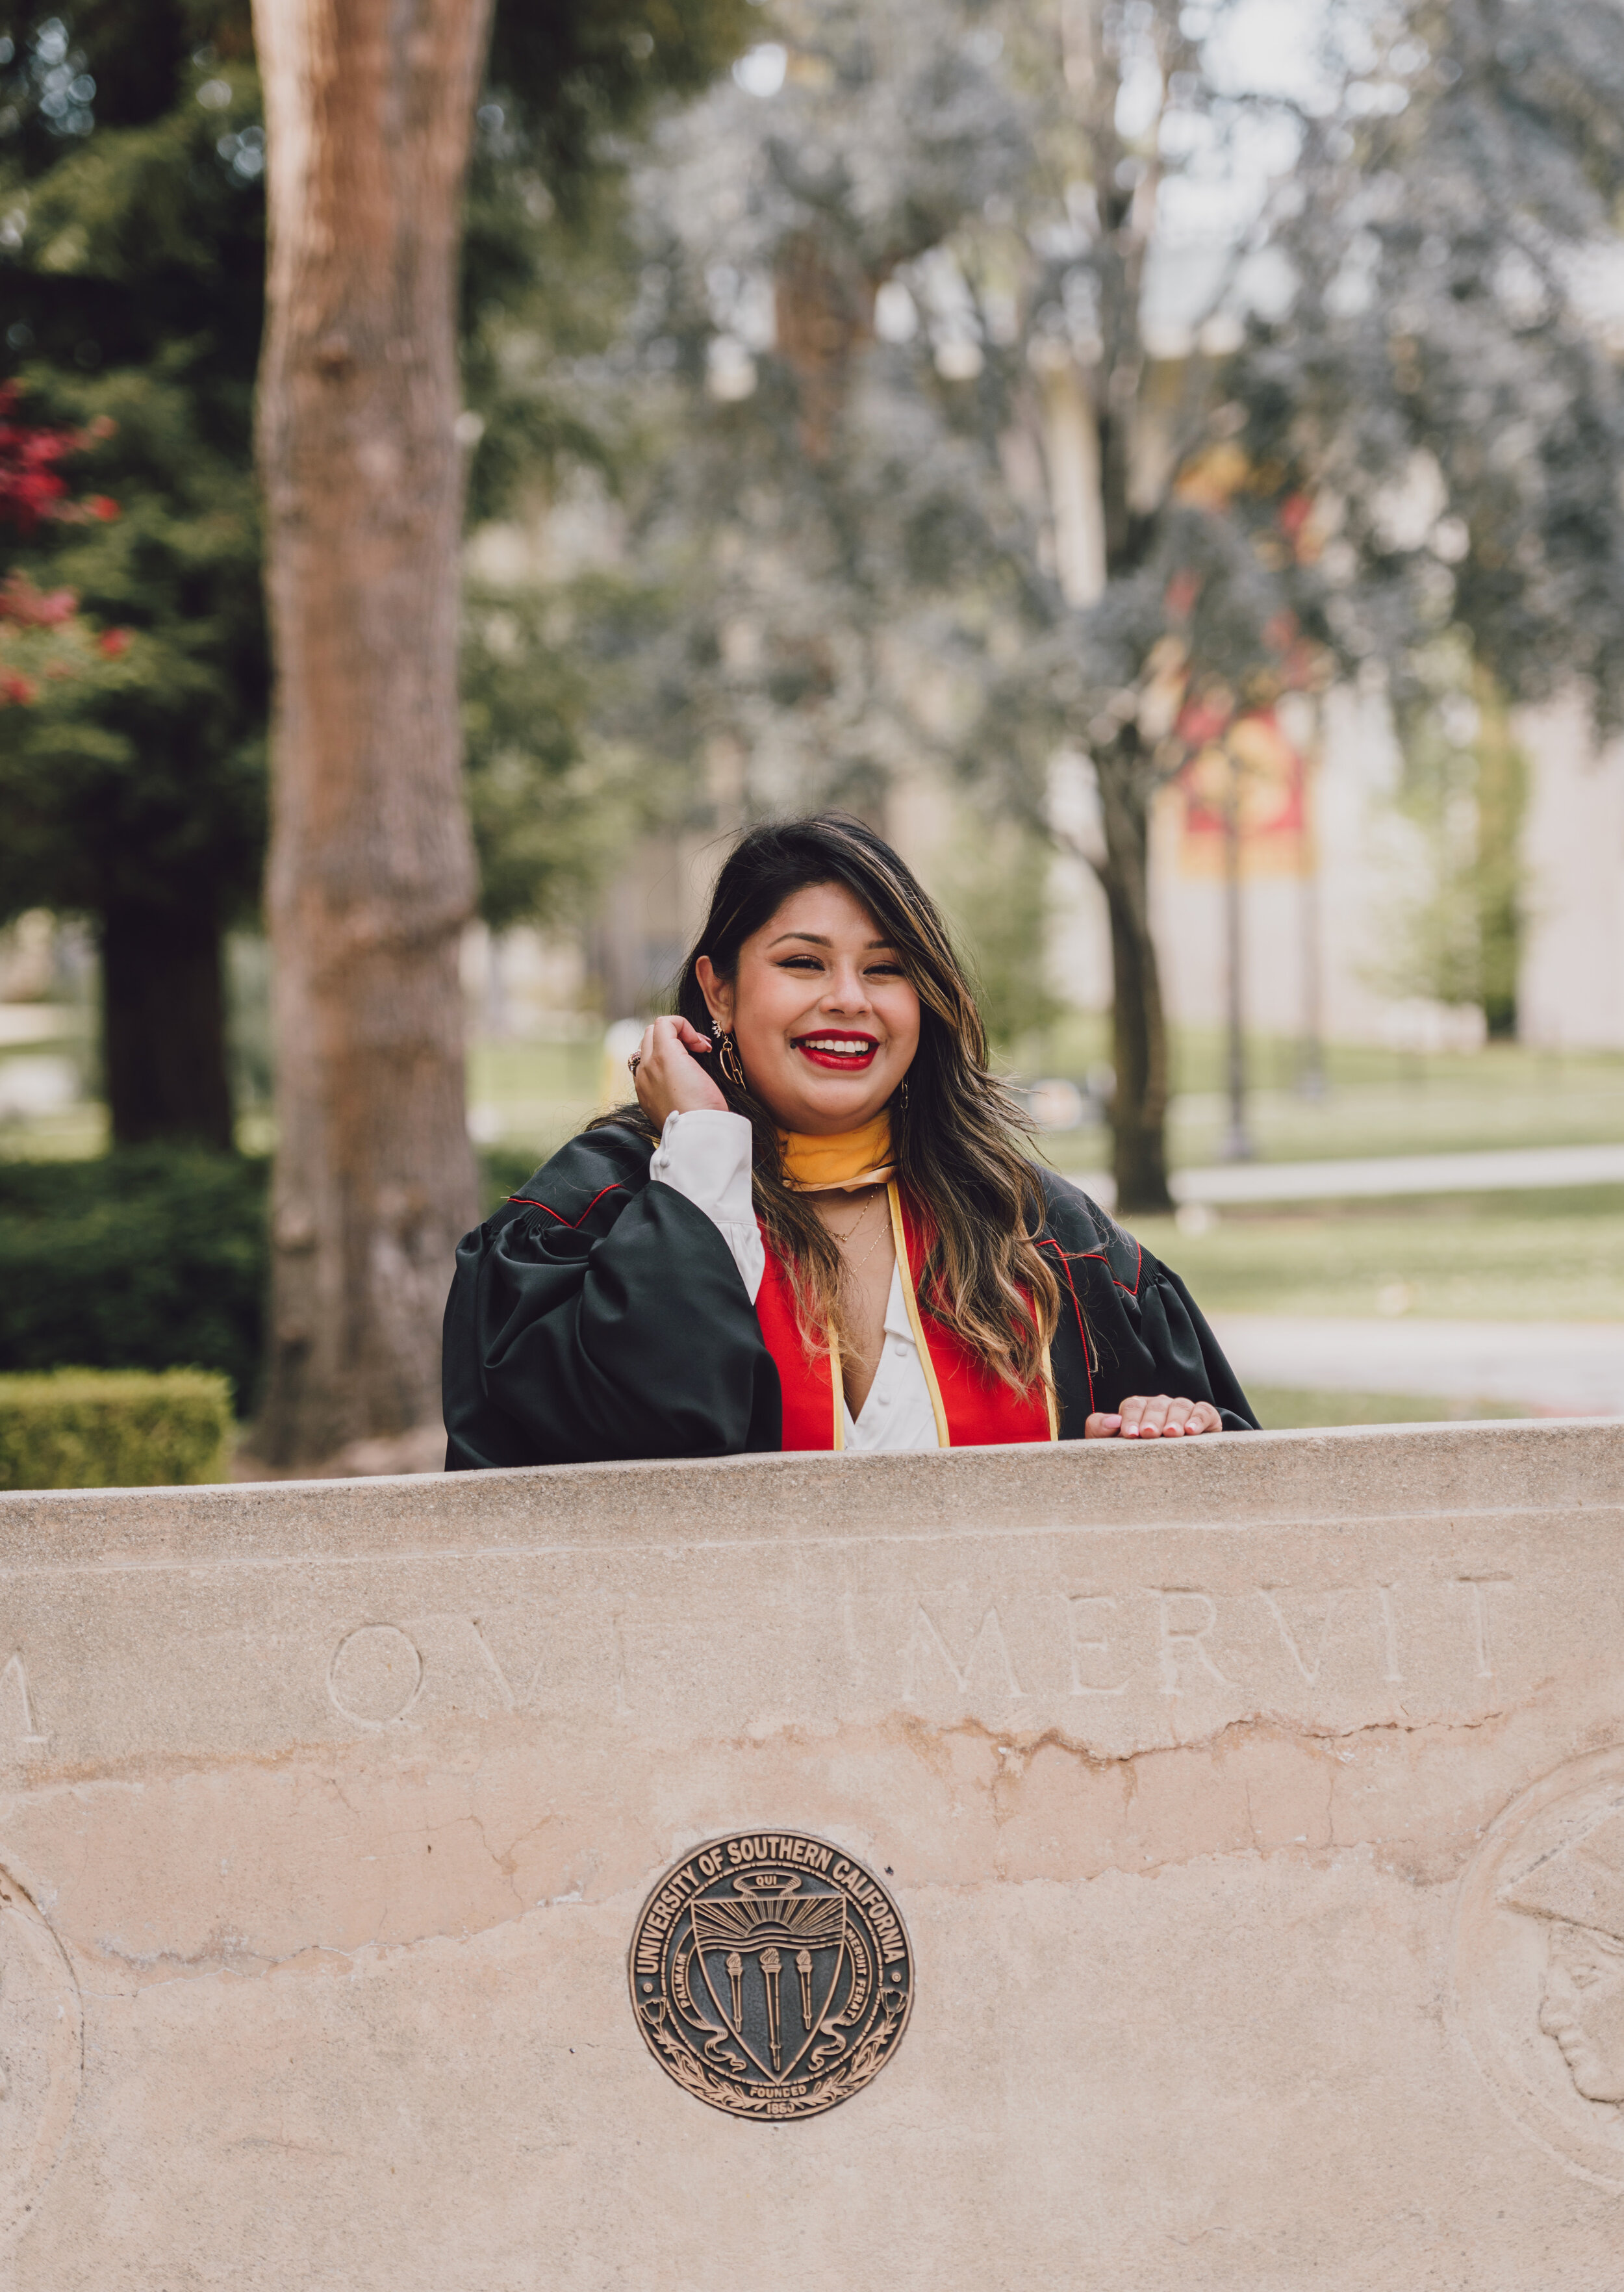 LosAngeles-Graduation-Portrait-Photographer-USC-21.jpg